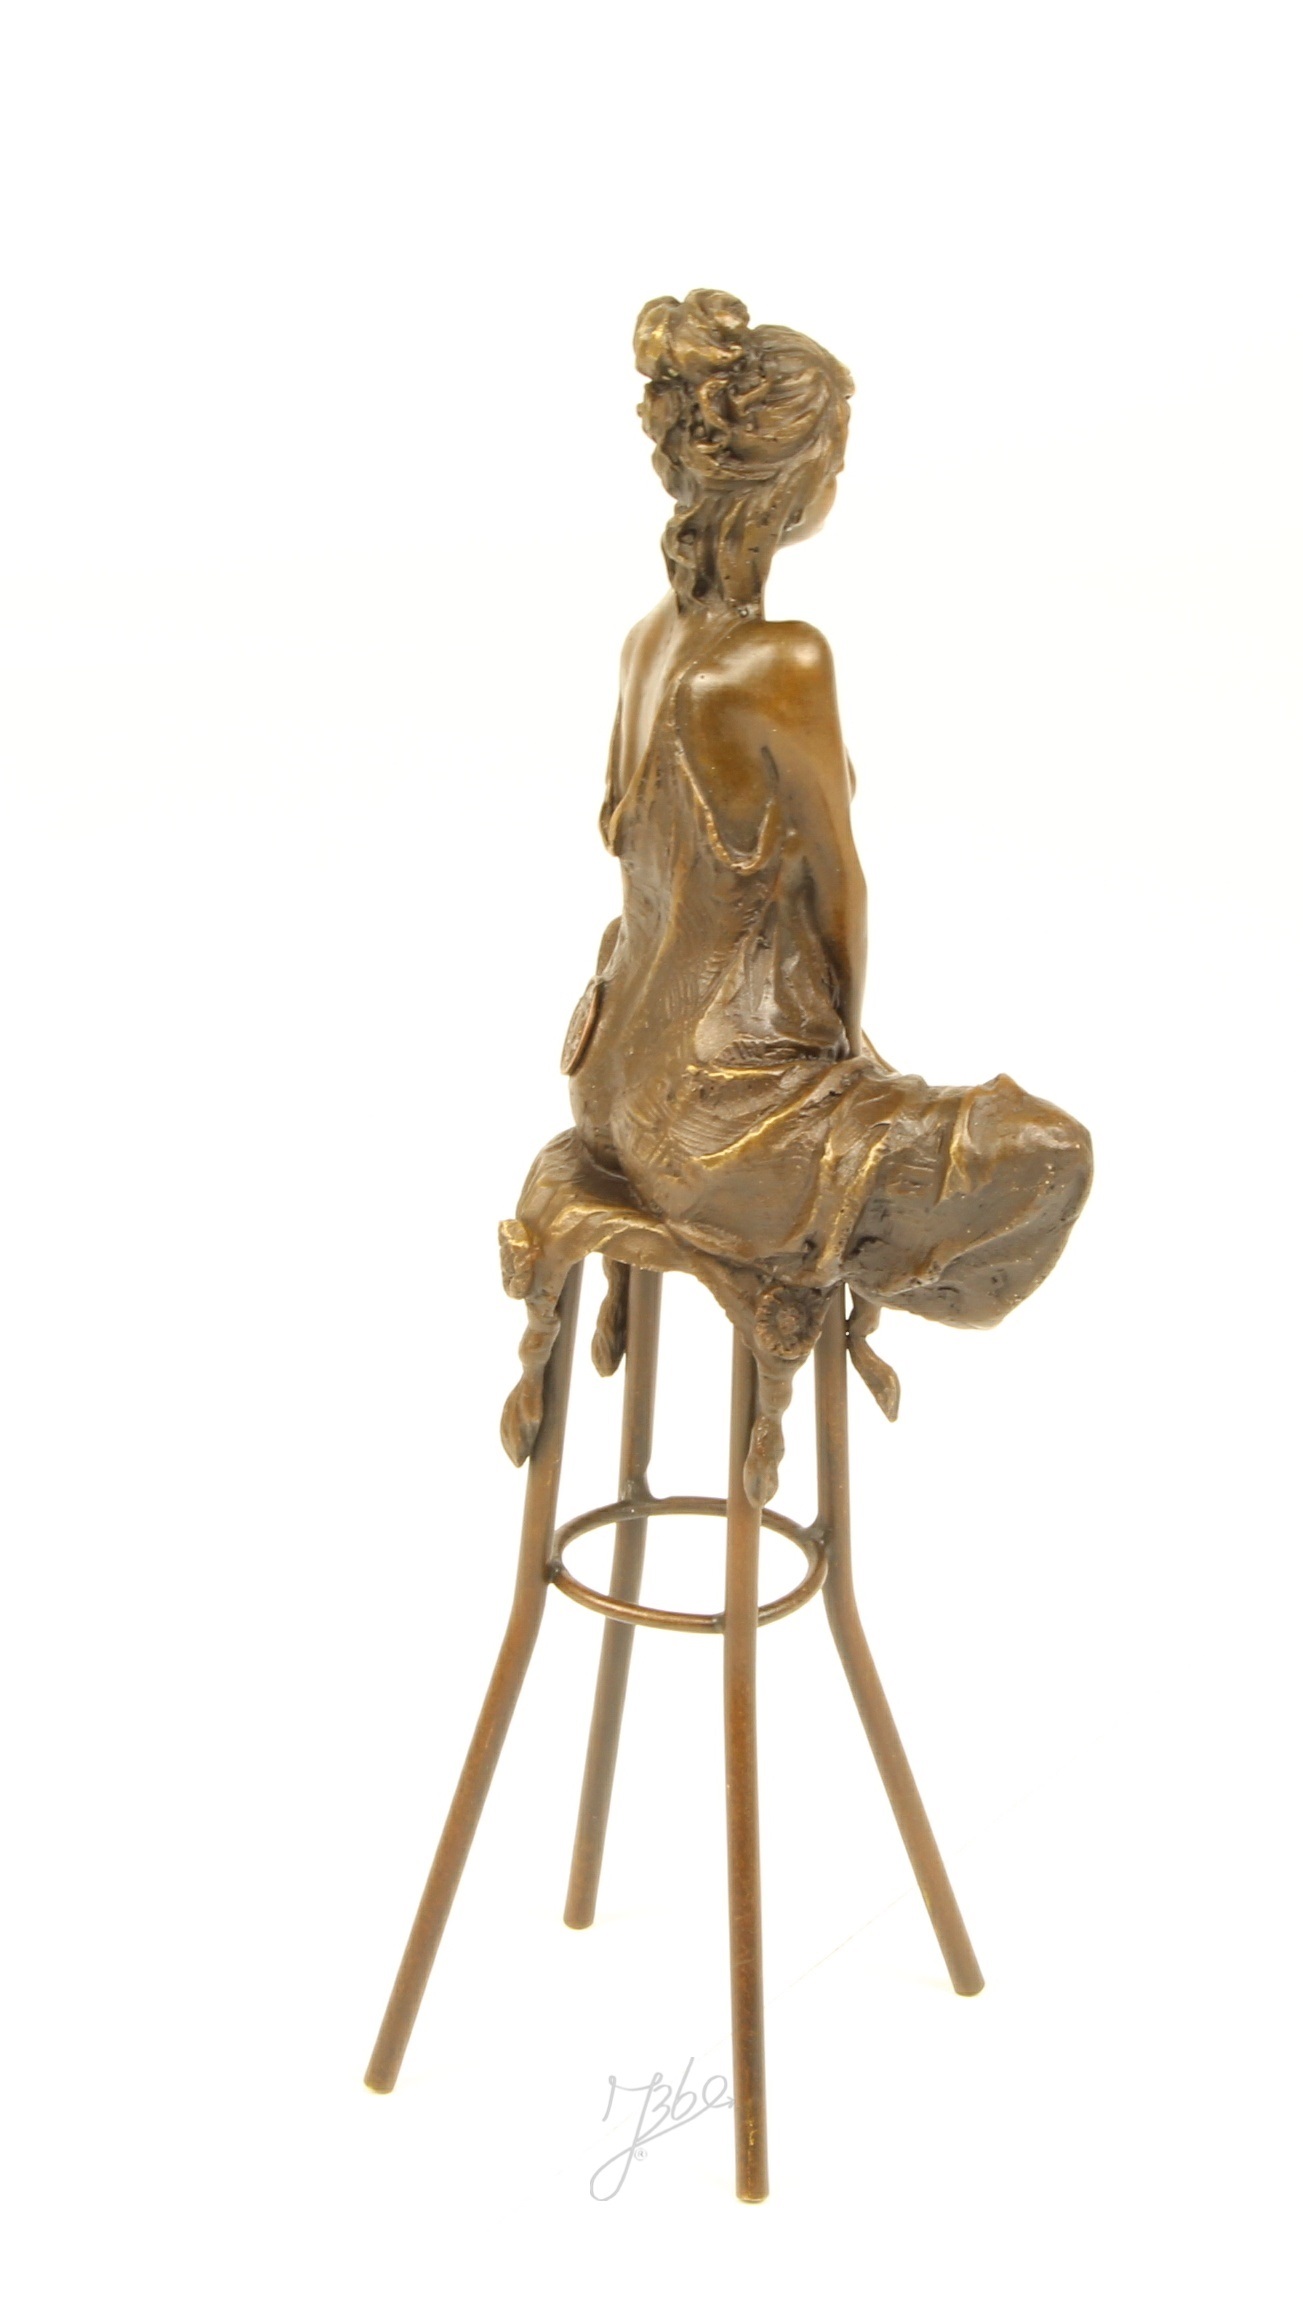 Bronzeskulptur einer sitzenden Dame auf einem Barhocker